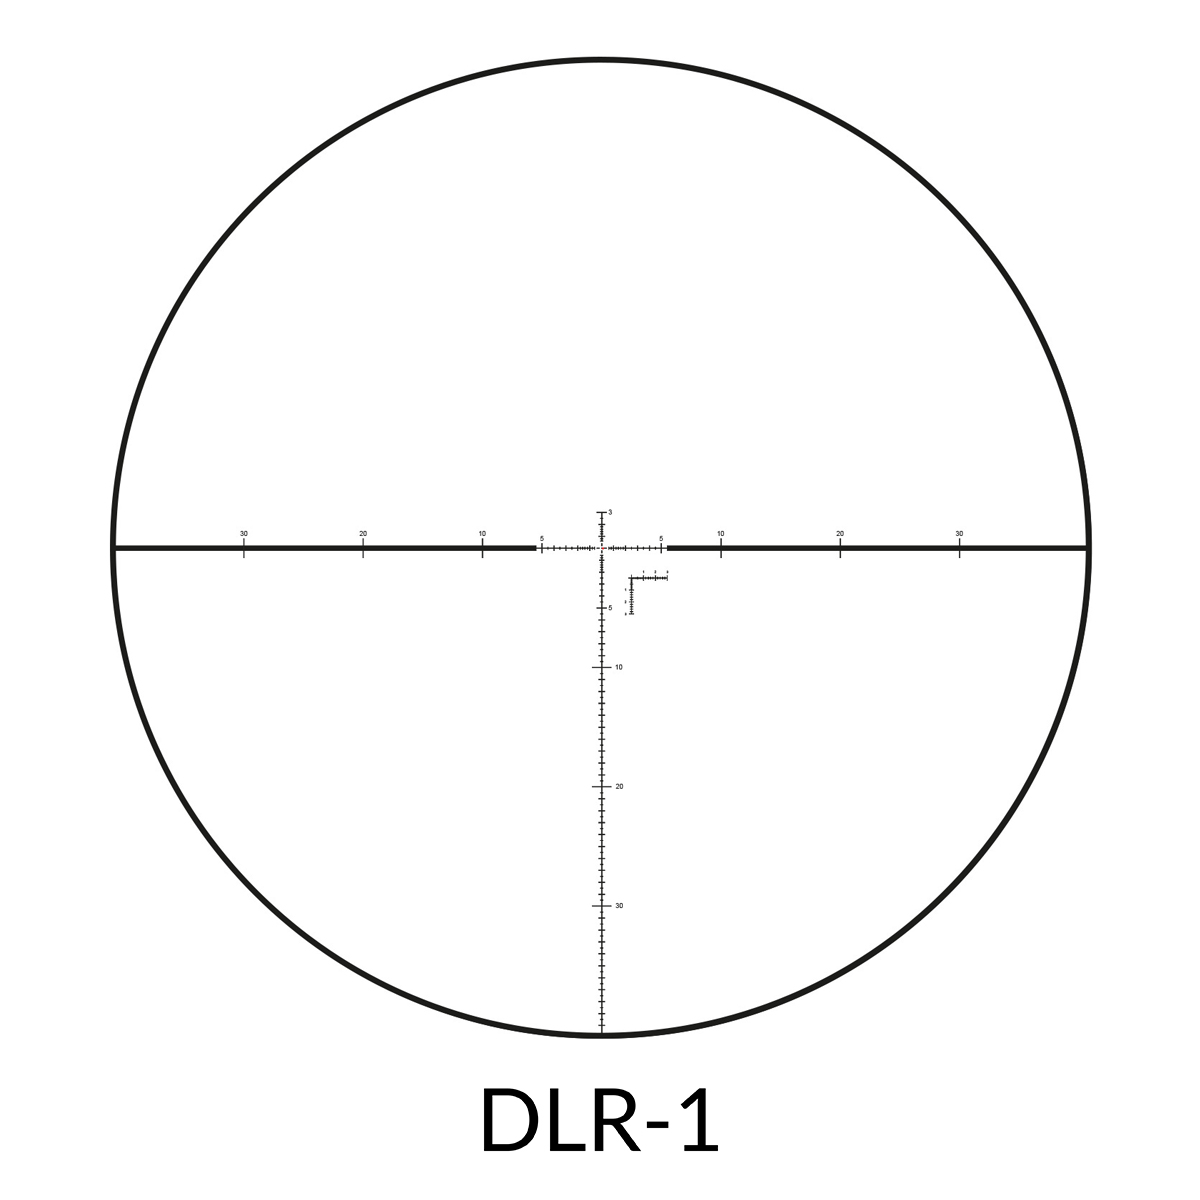 DLR-1